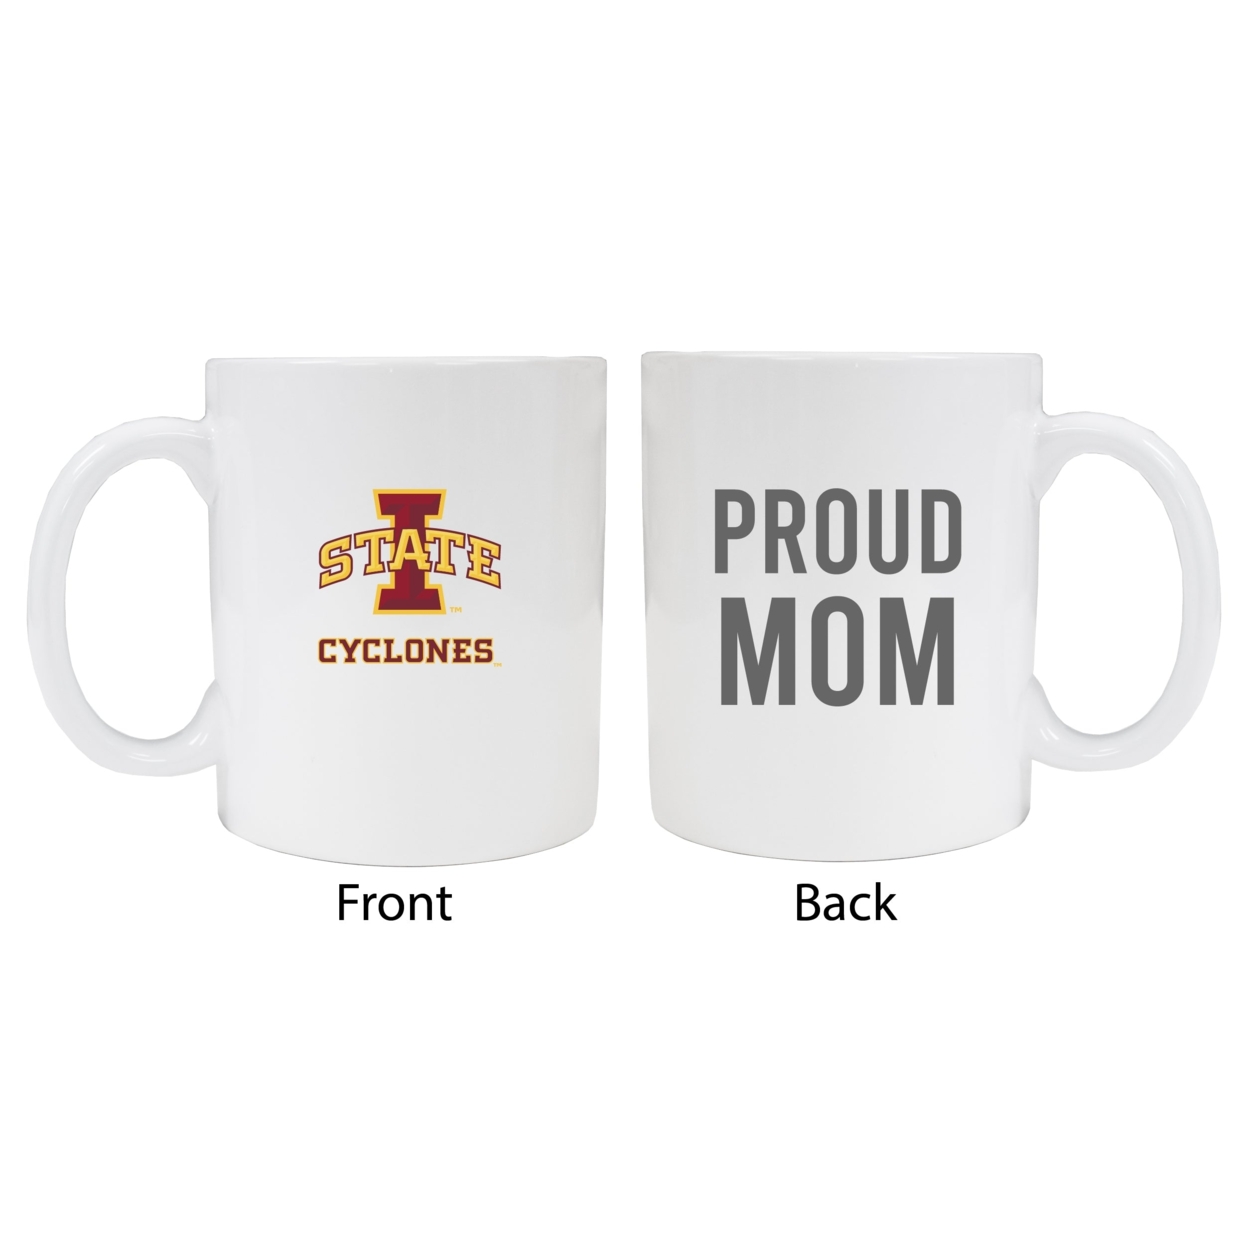 Iowa State Cyclones Proud Mom Ceramic Coffee Mug - White (2 Pack)